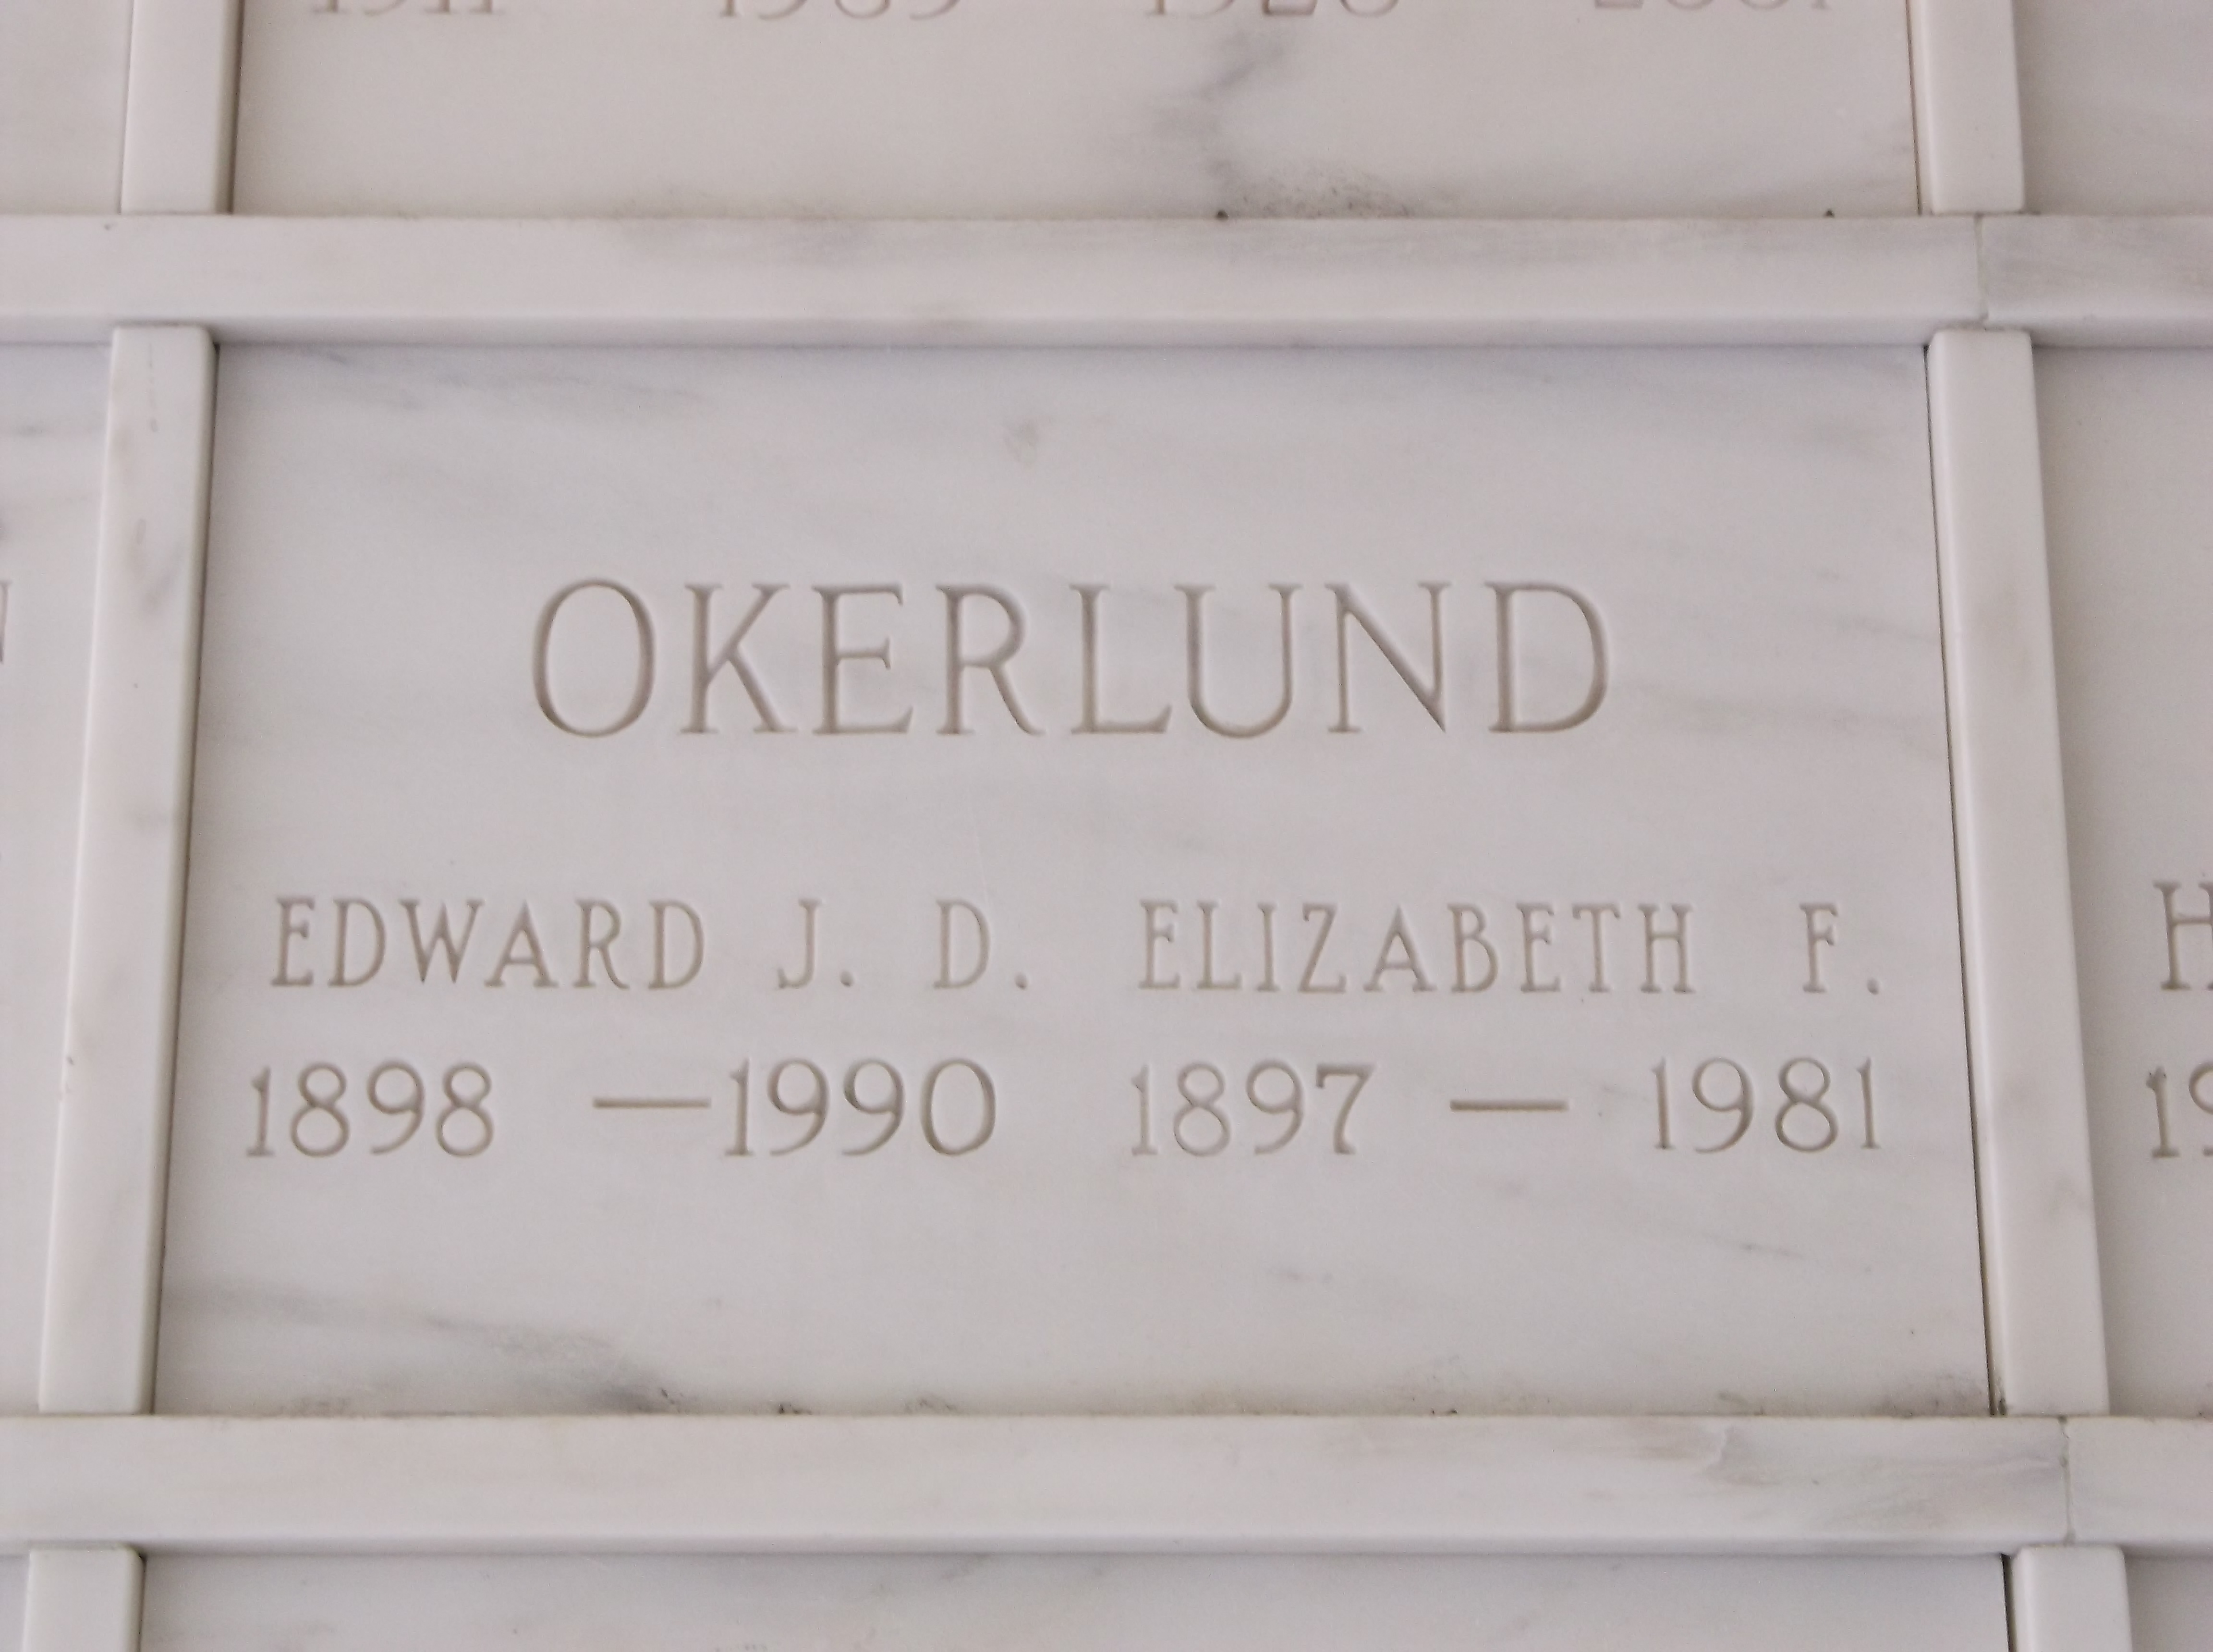 Edward J D Okerlund